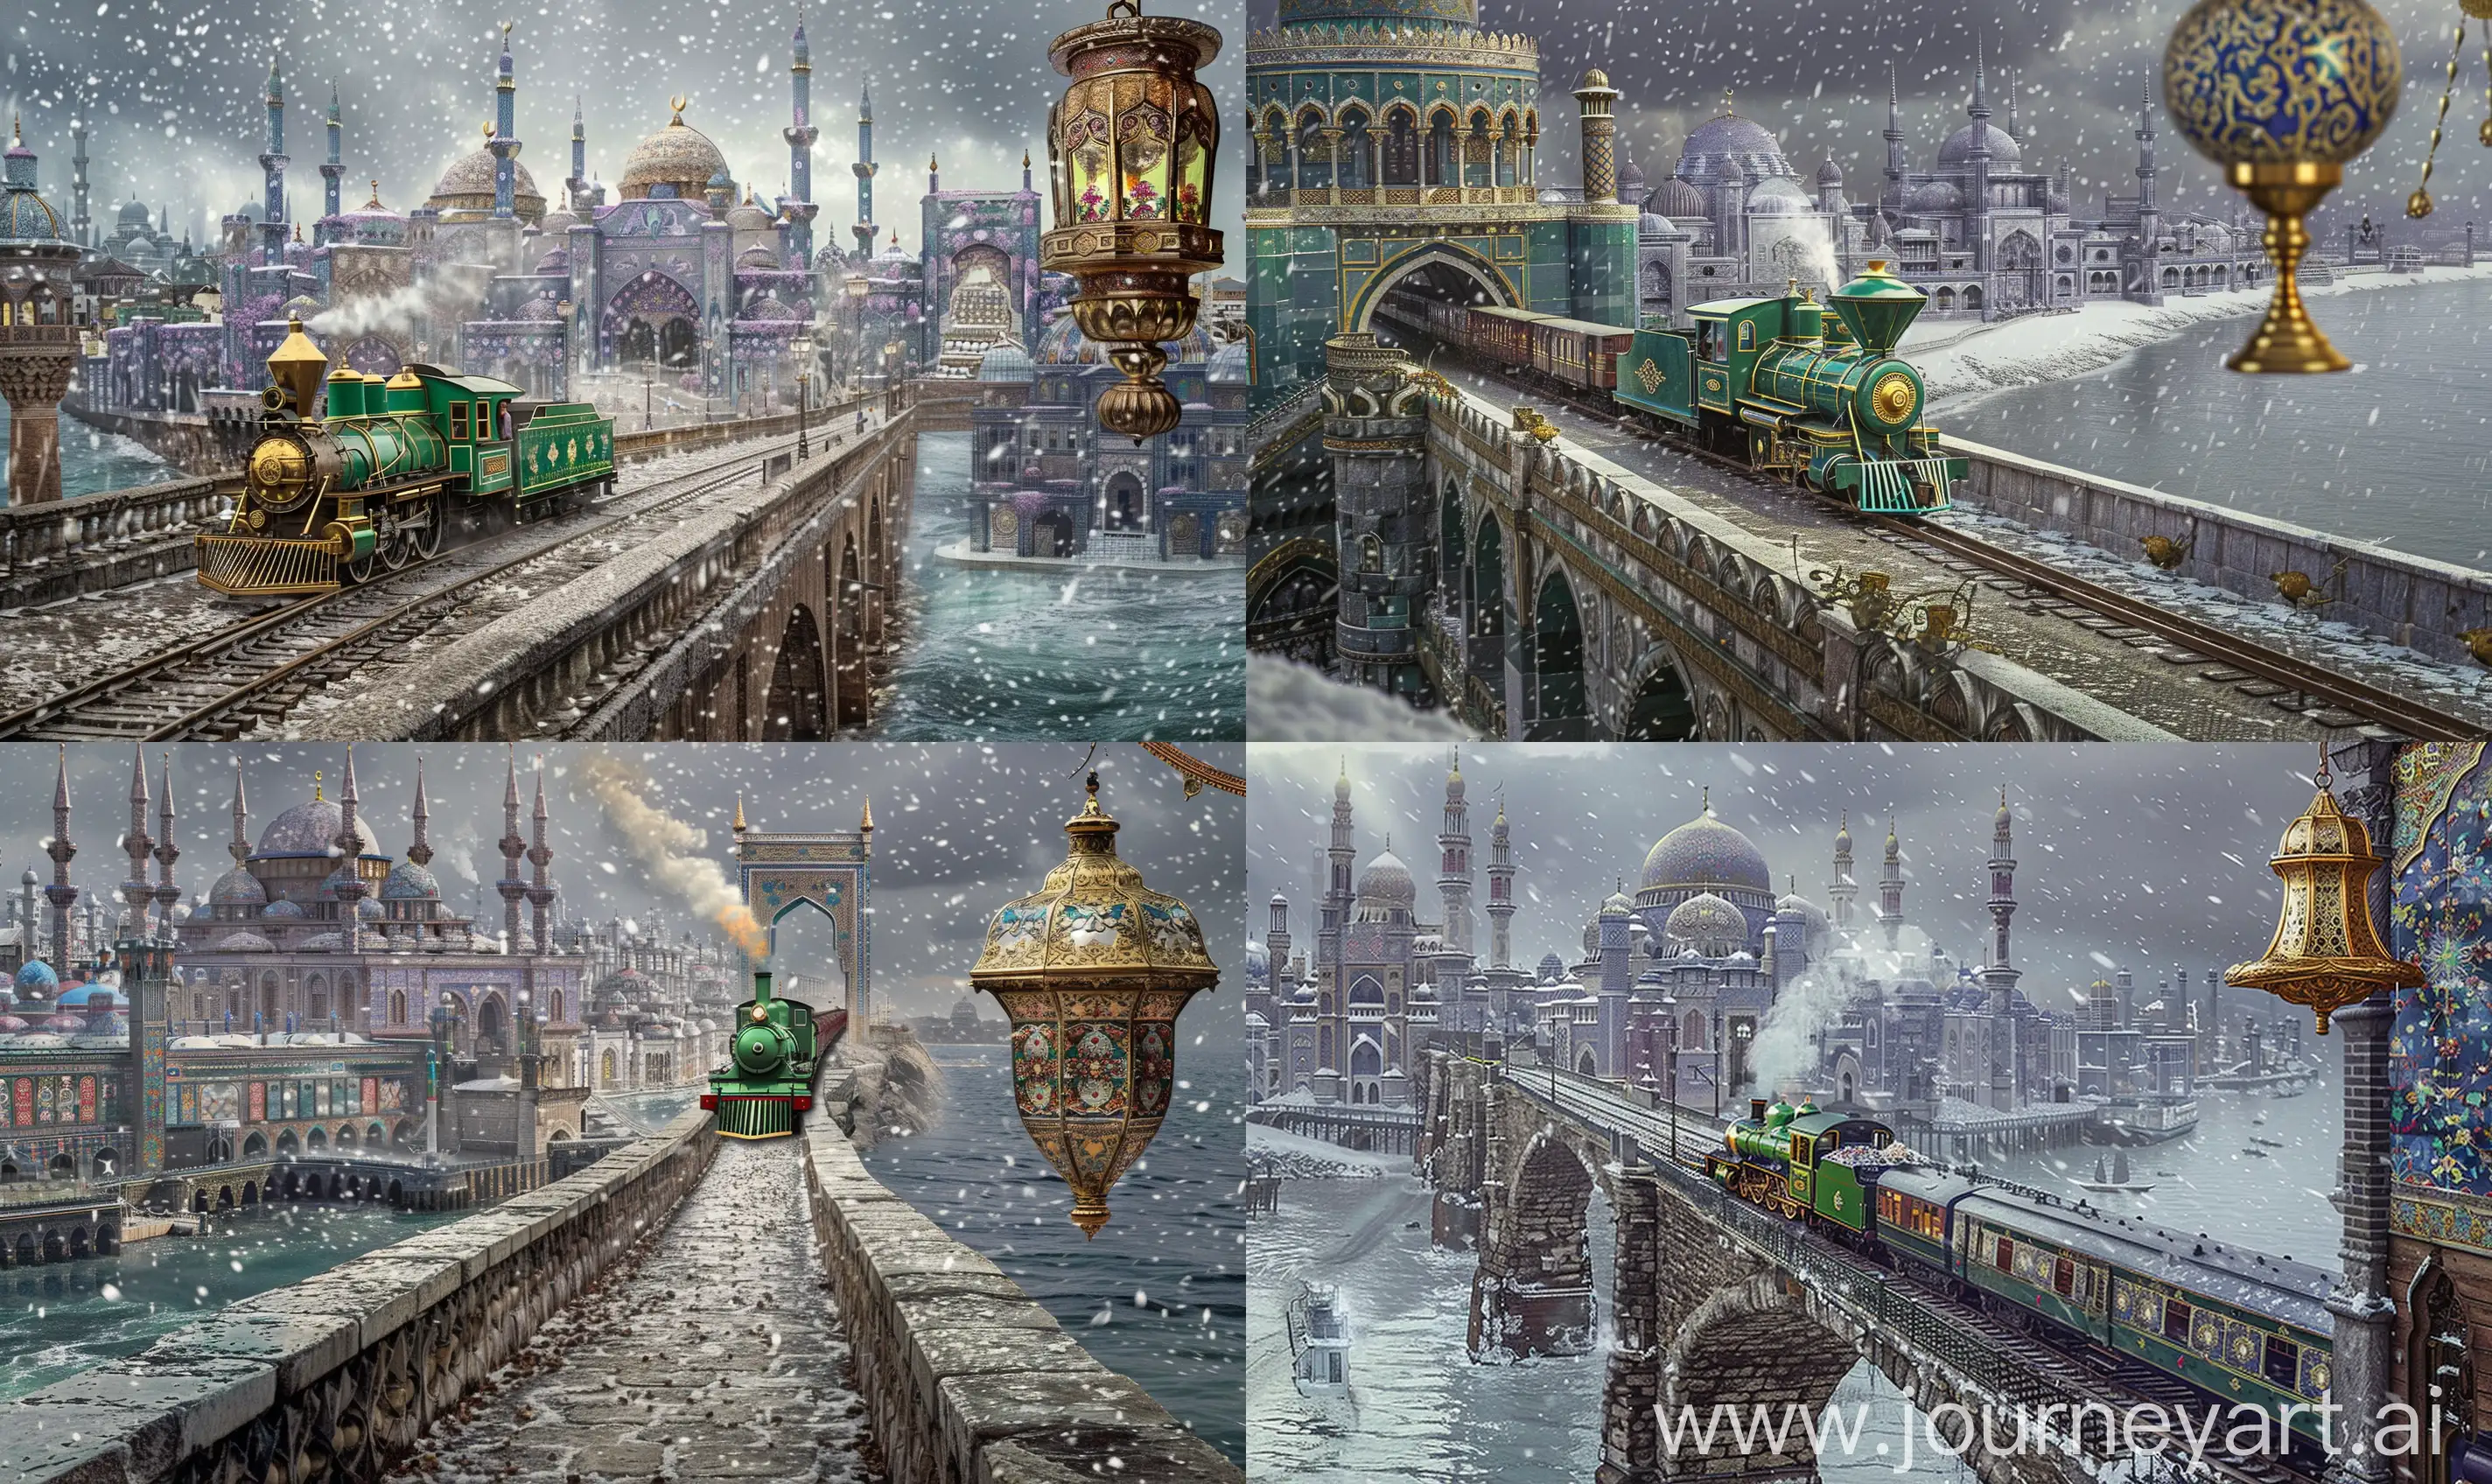 Islamic-Stone-Bridge-and-Steam-Engine-in-Lavender-Cityscape